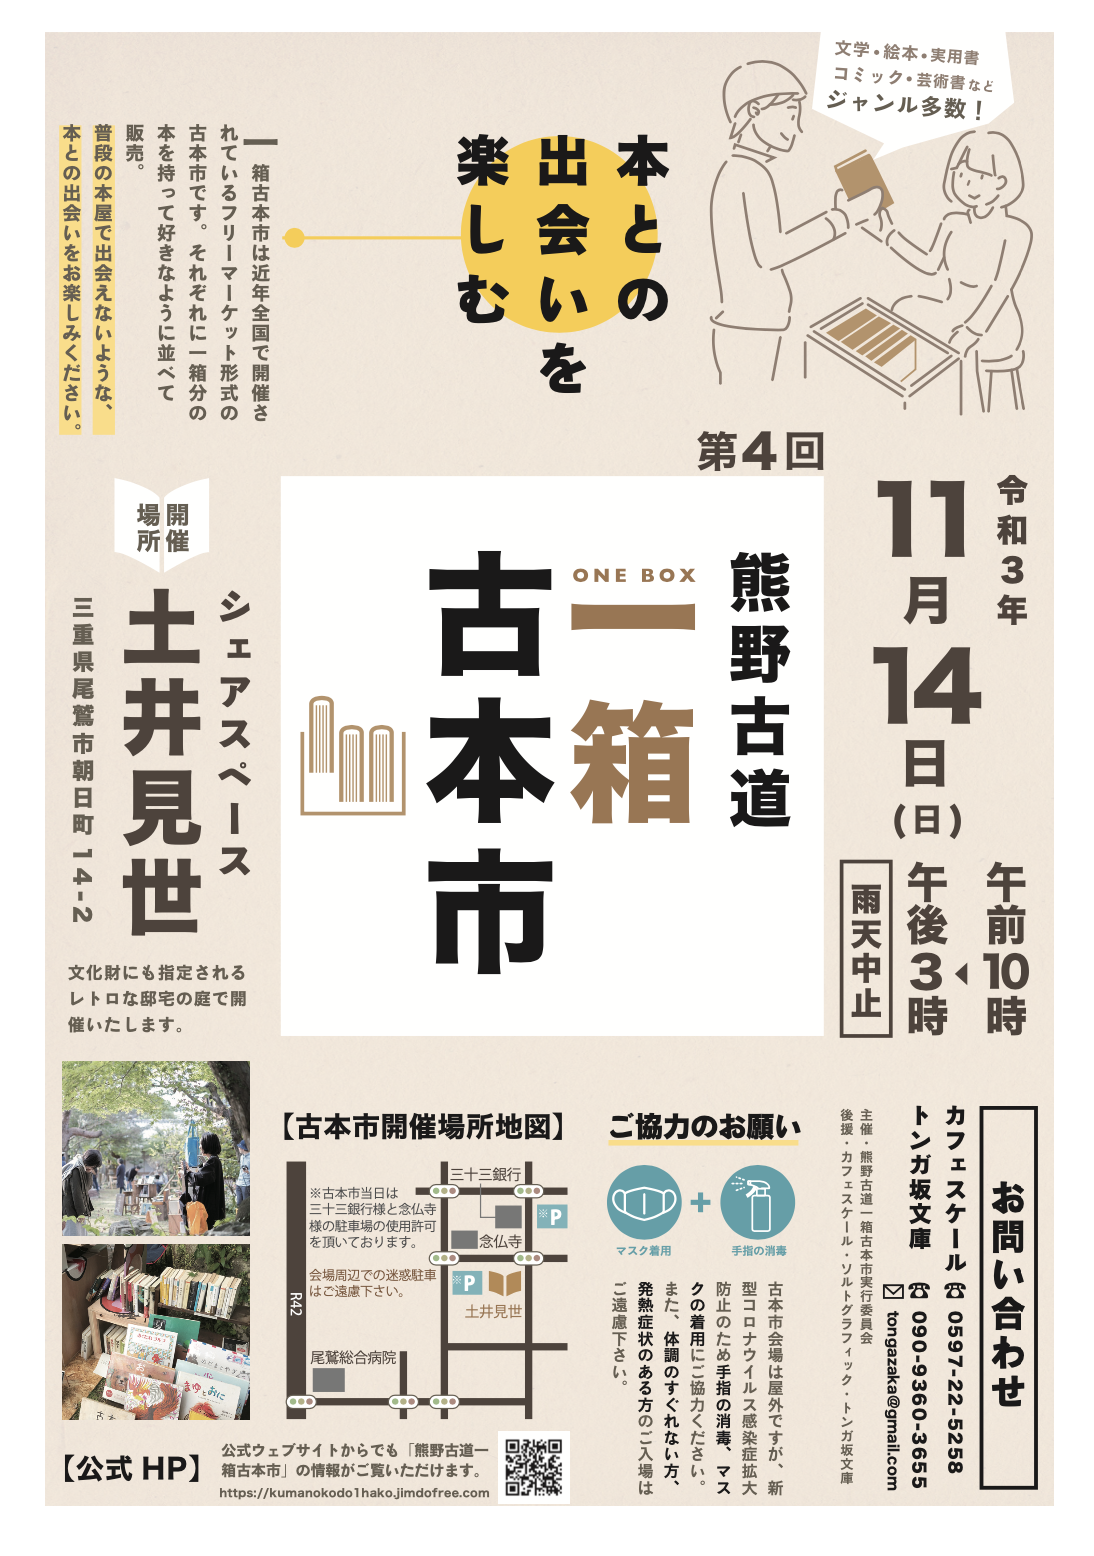 熊野古道一箱古本市を開催します。